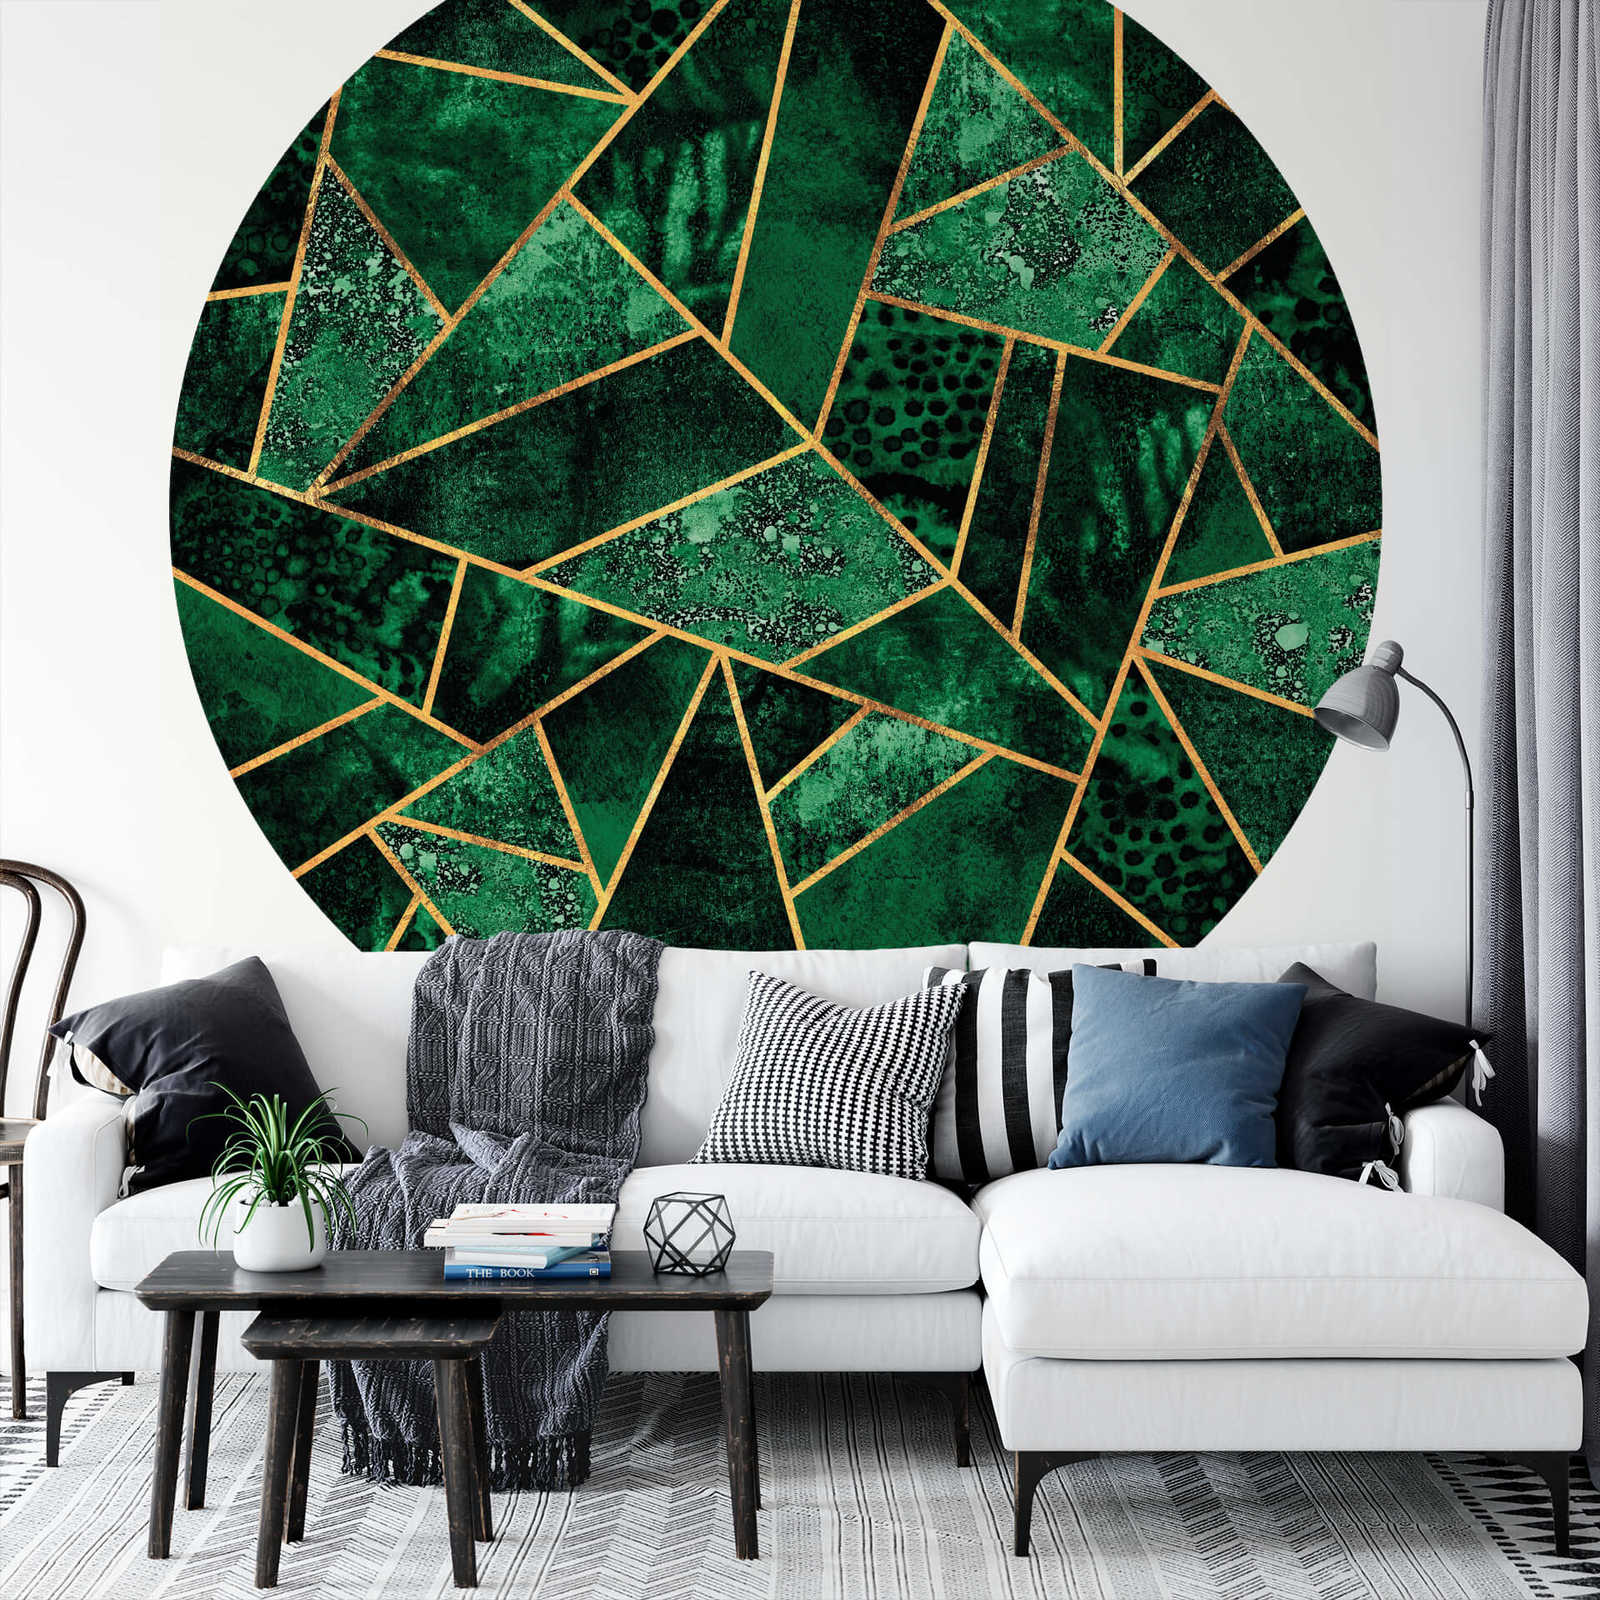             Muurschildering ronde geometrische vormen, groen
        